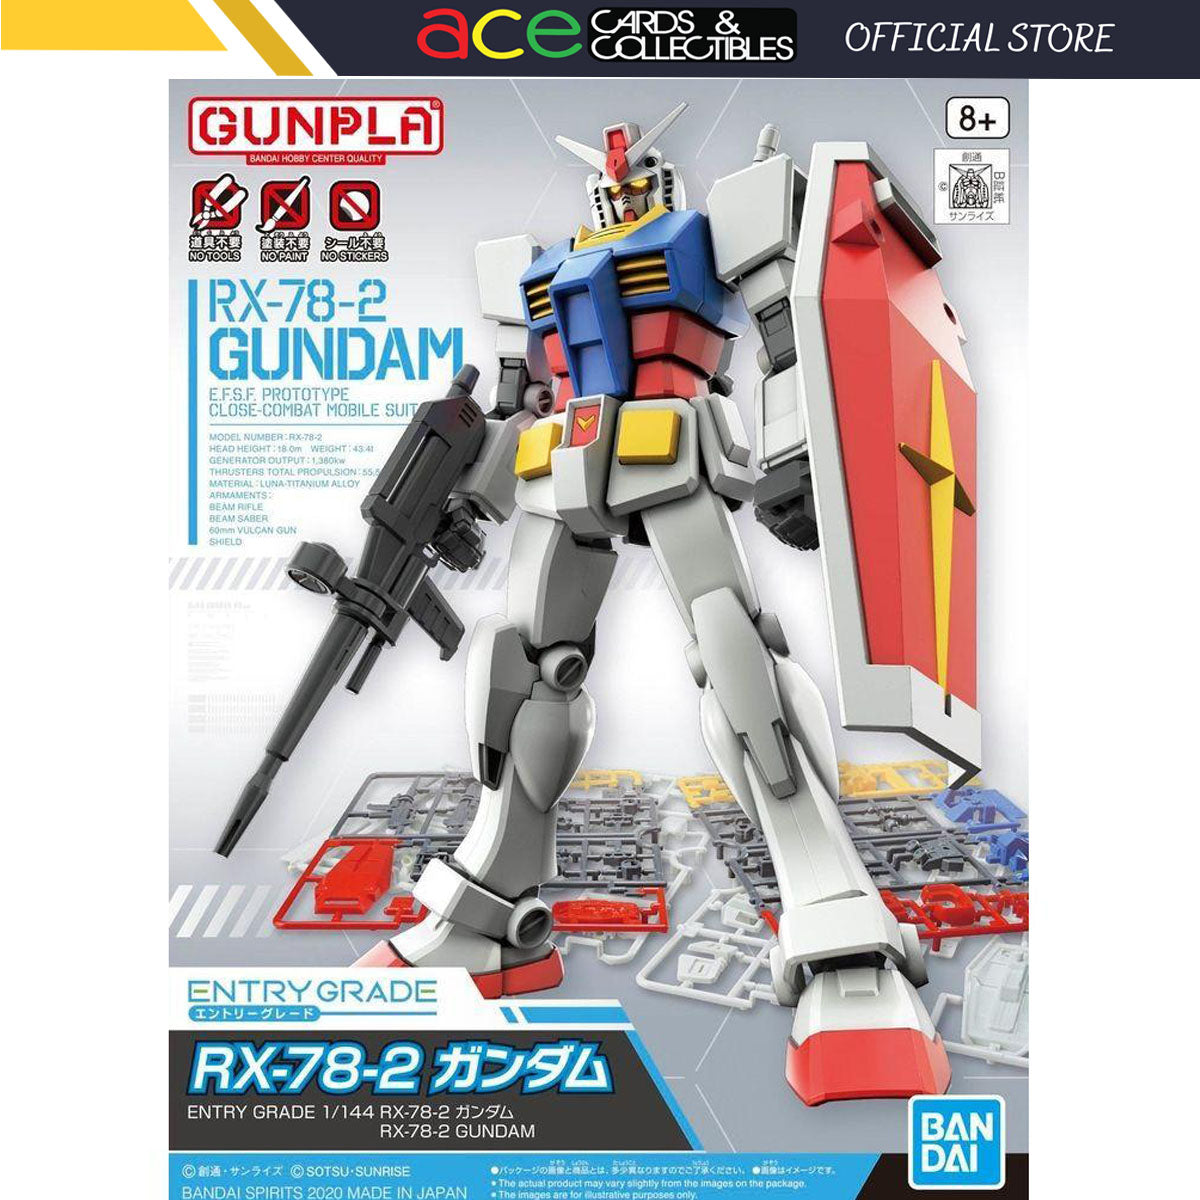 Gunpla Entry Grade 1/144 RX-78-2 Gundam-Bandai-Ace Cards & Collectibles